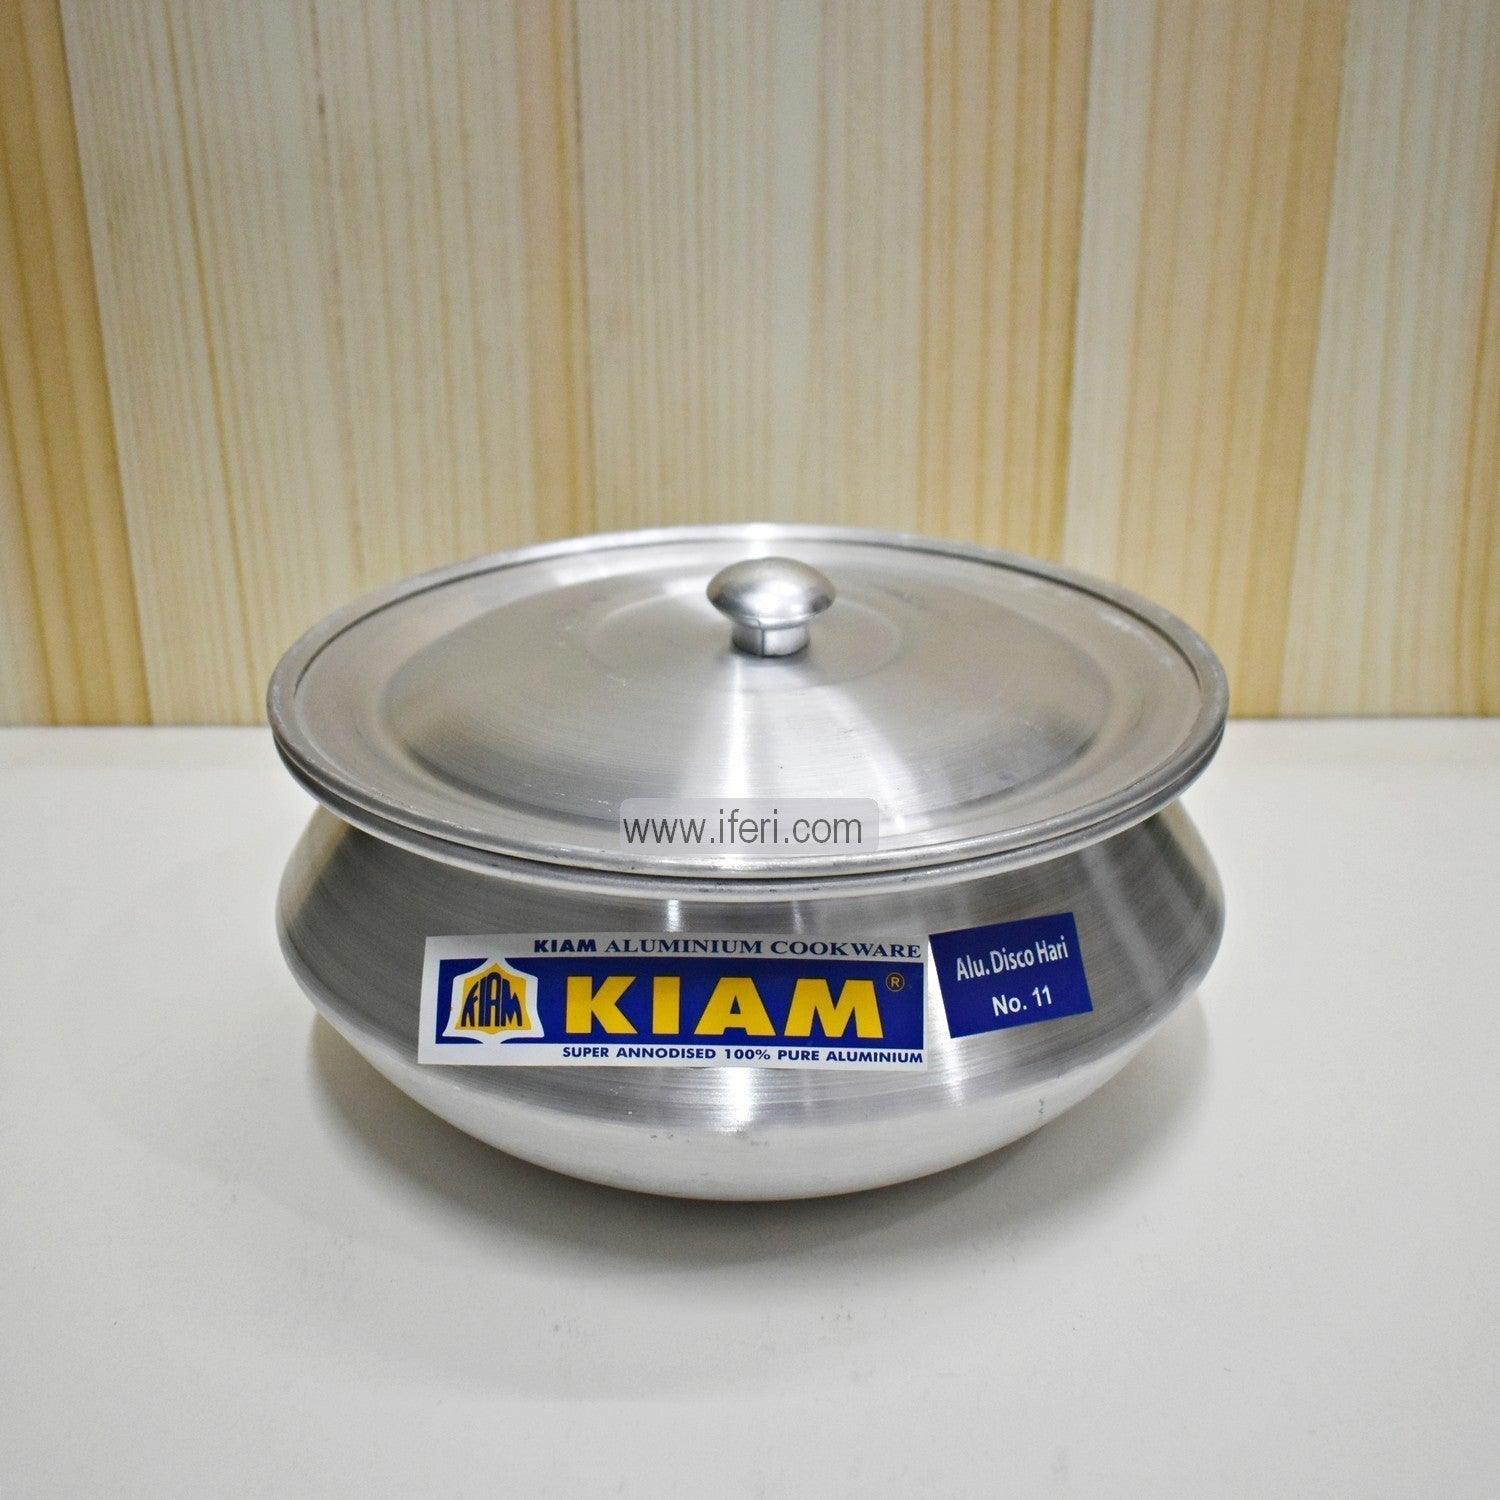 15 cm Kiam Aluminium Hari Cookware With Aluminium Lid BCG02221 Price in Bangladesh - iferi.com